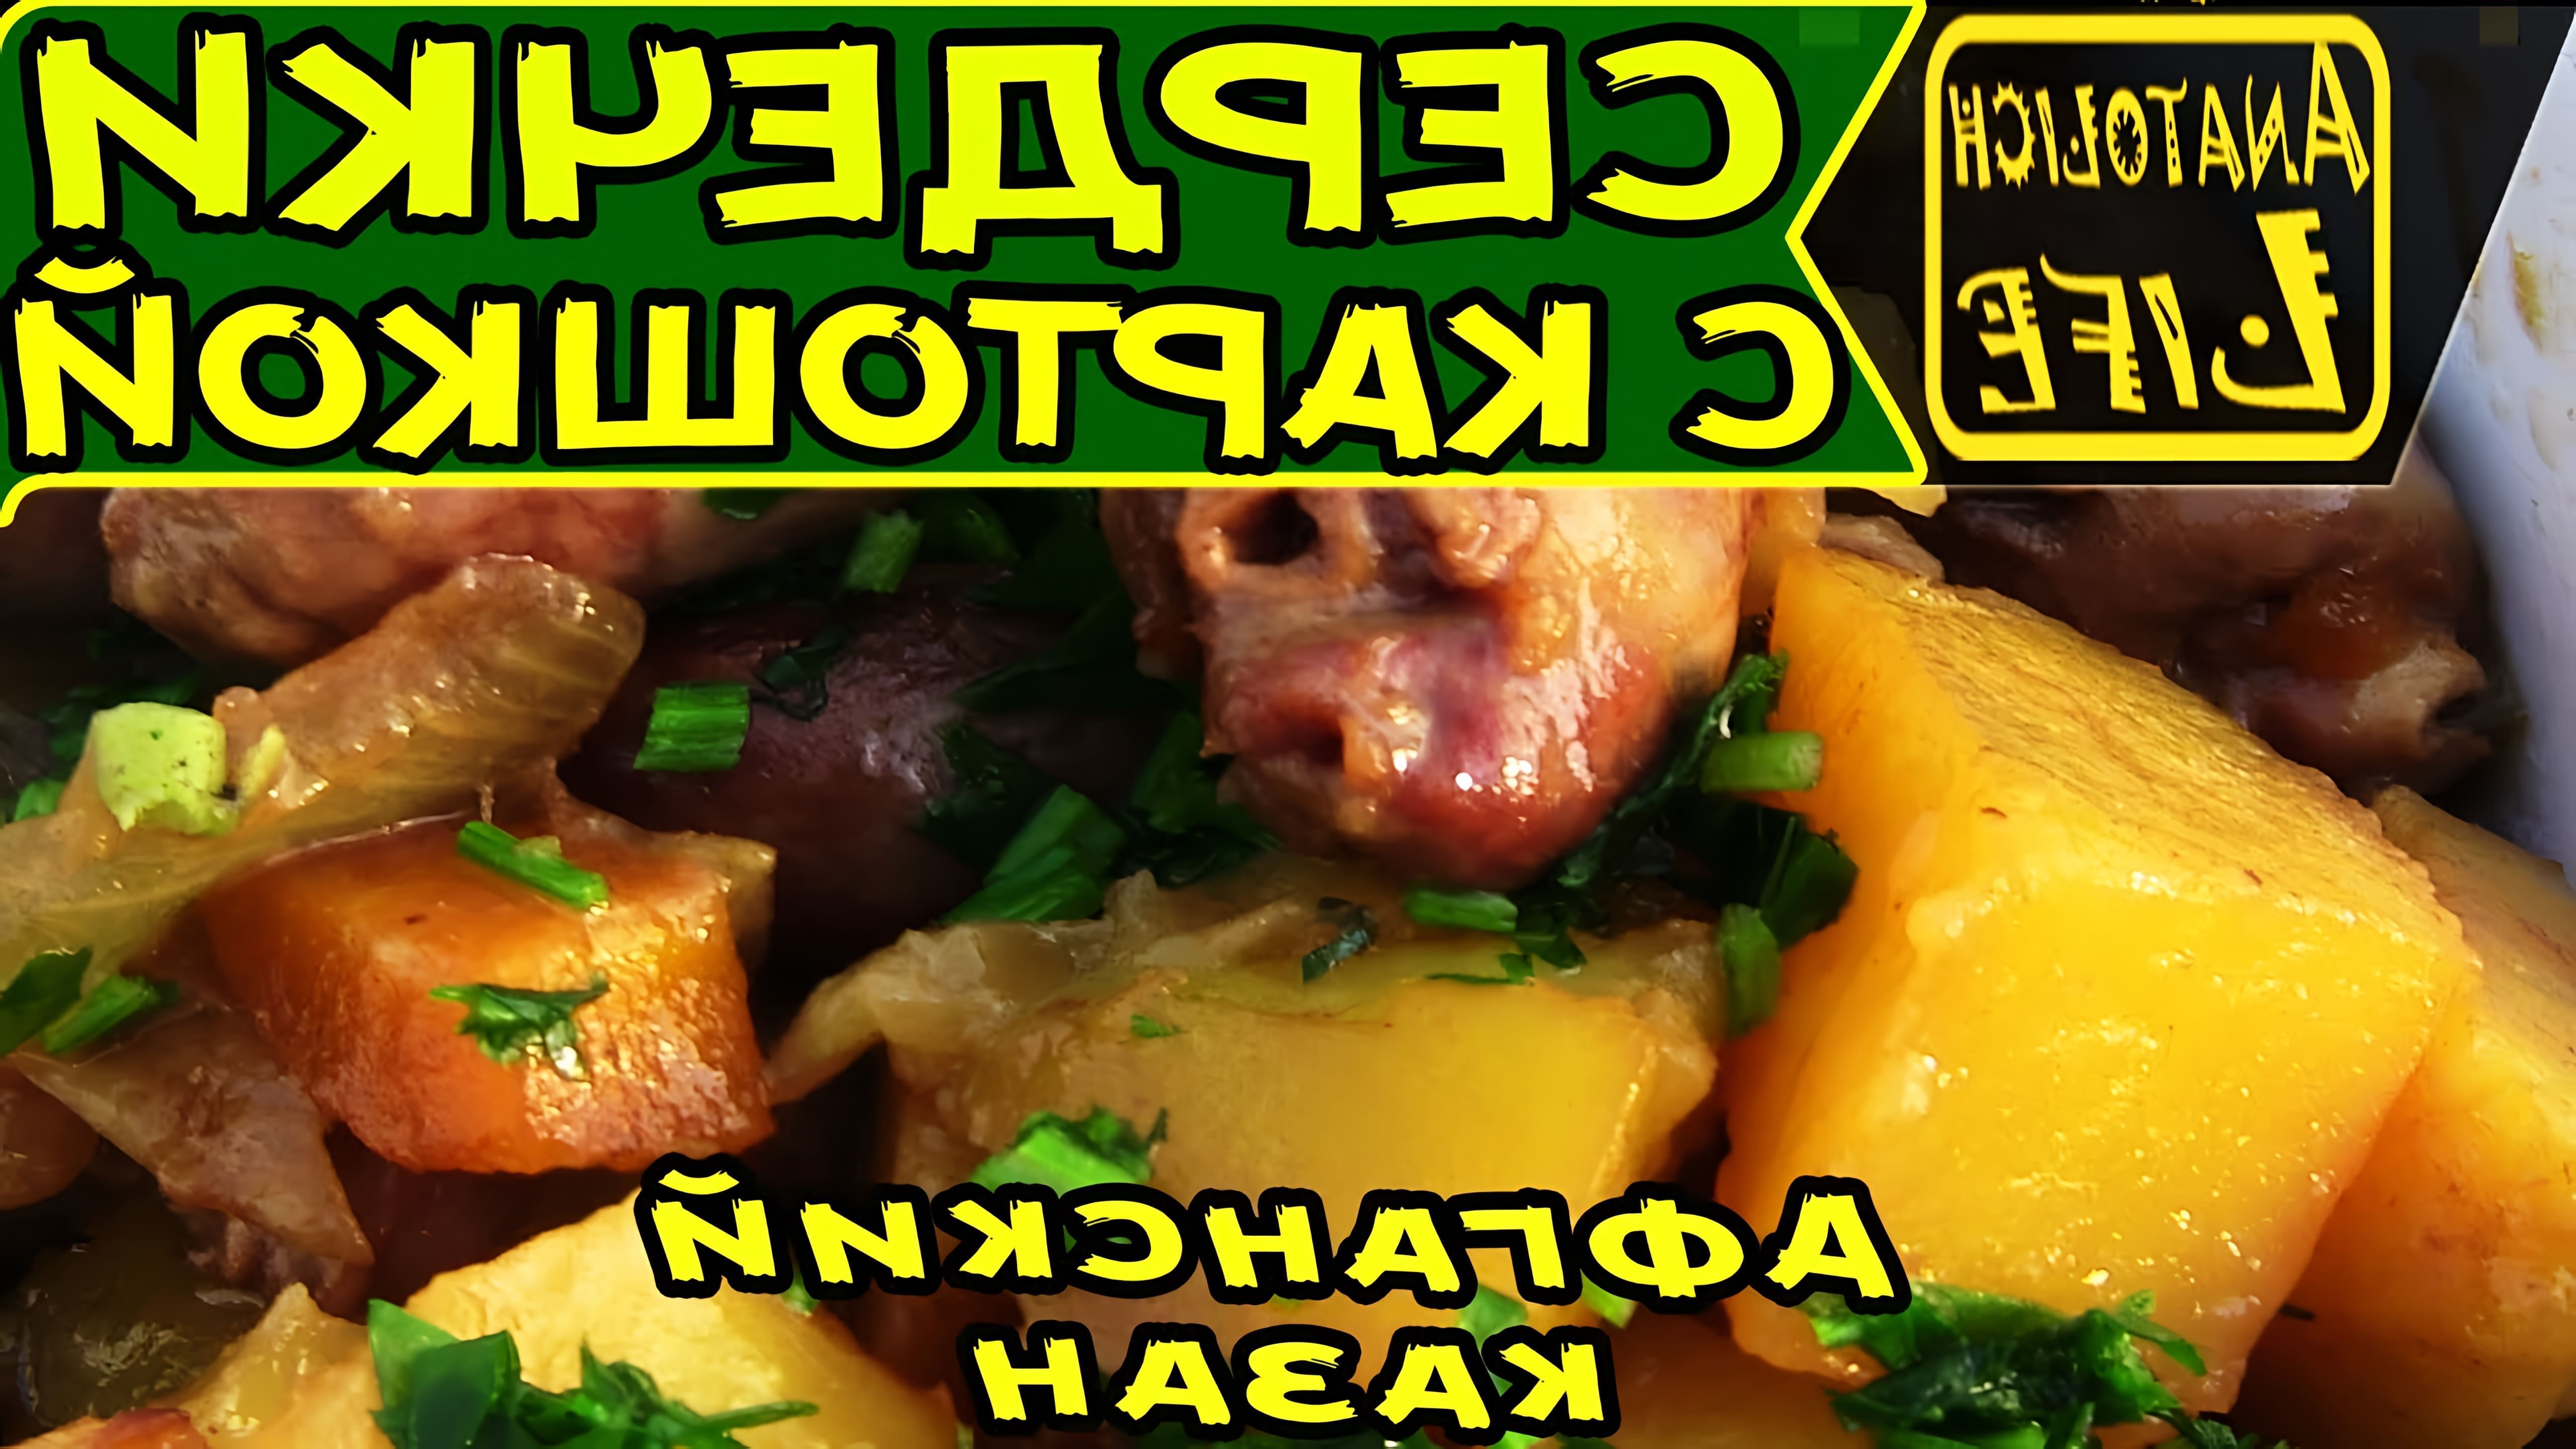 В этом видео демонстрируется простой и вкусный рецепт приготовления картошки с куриными сердечками в афганском казане